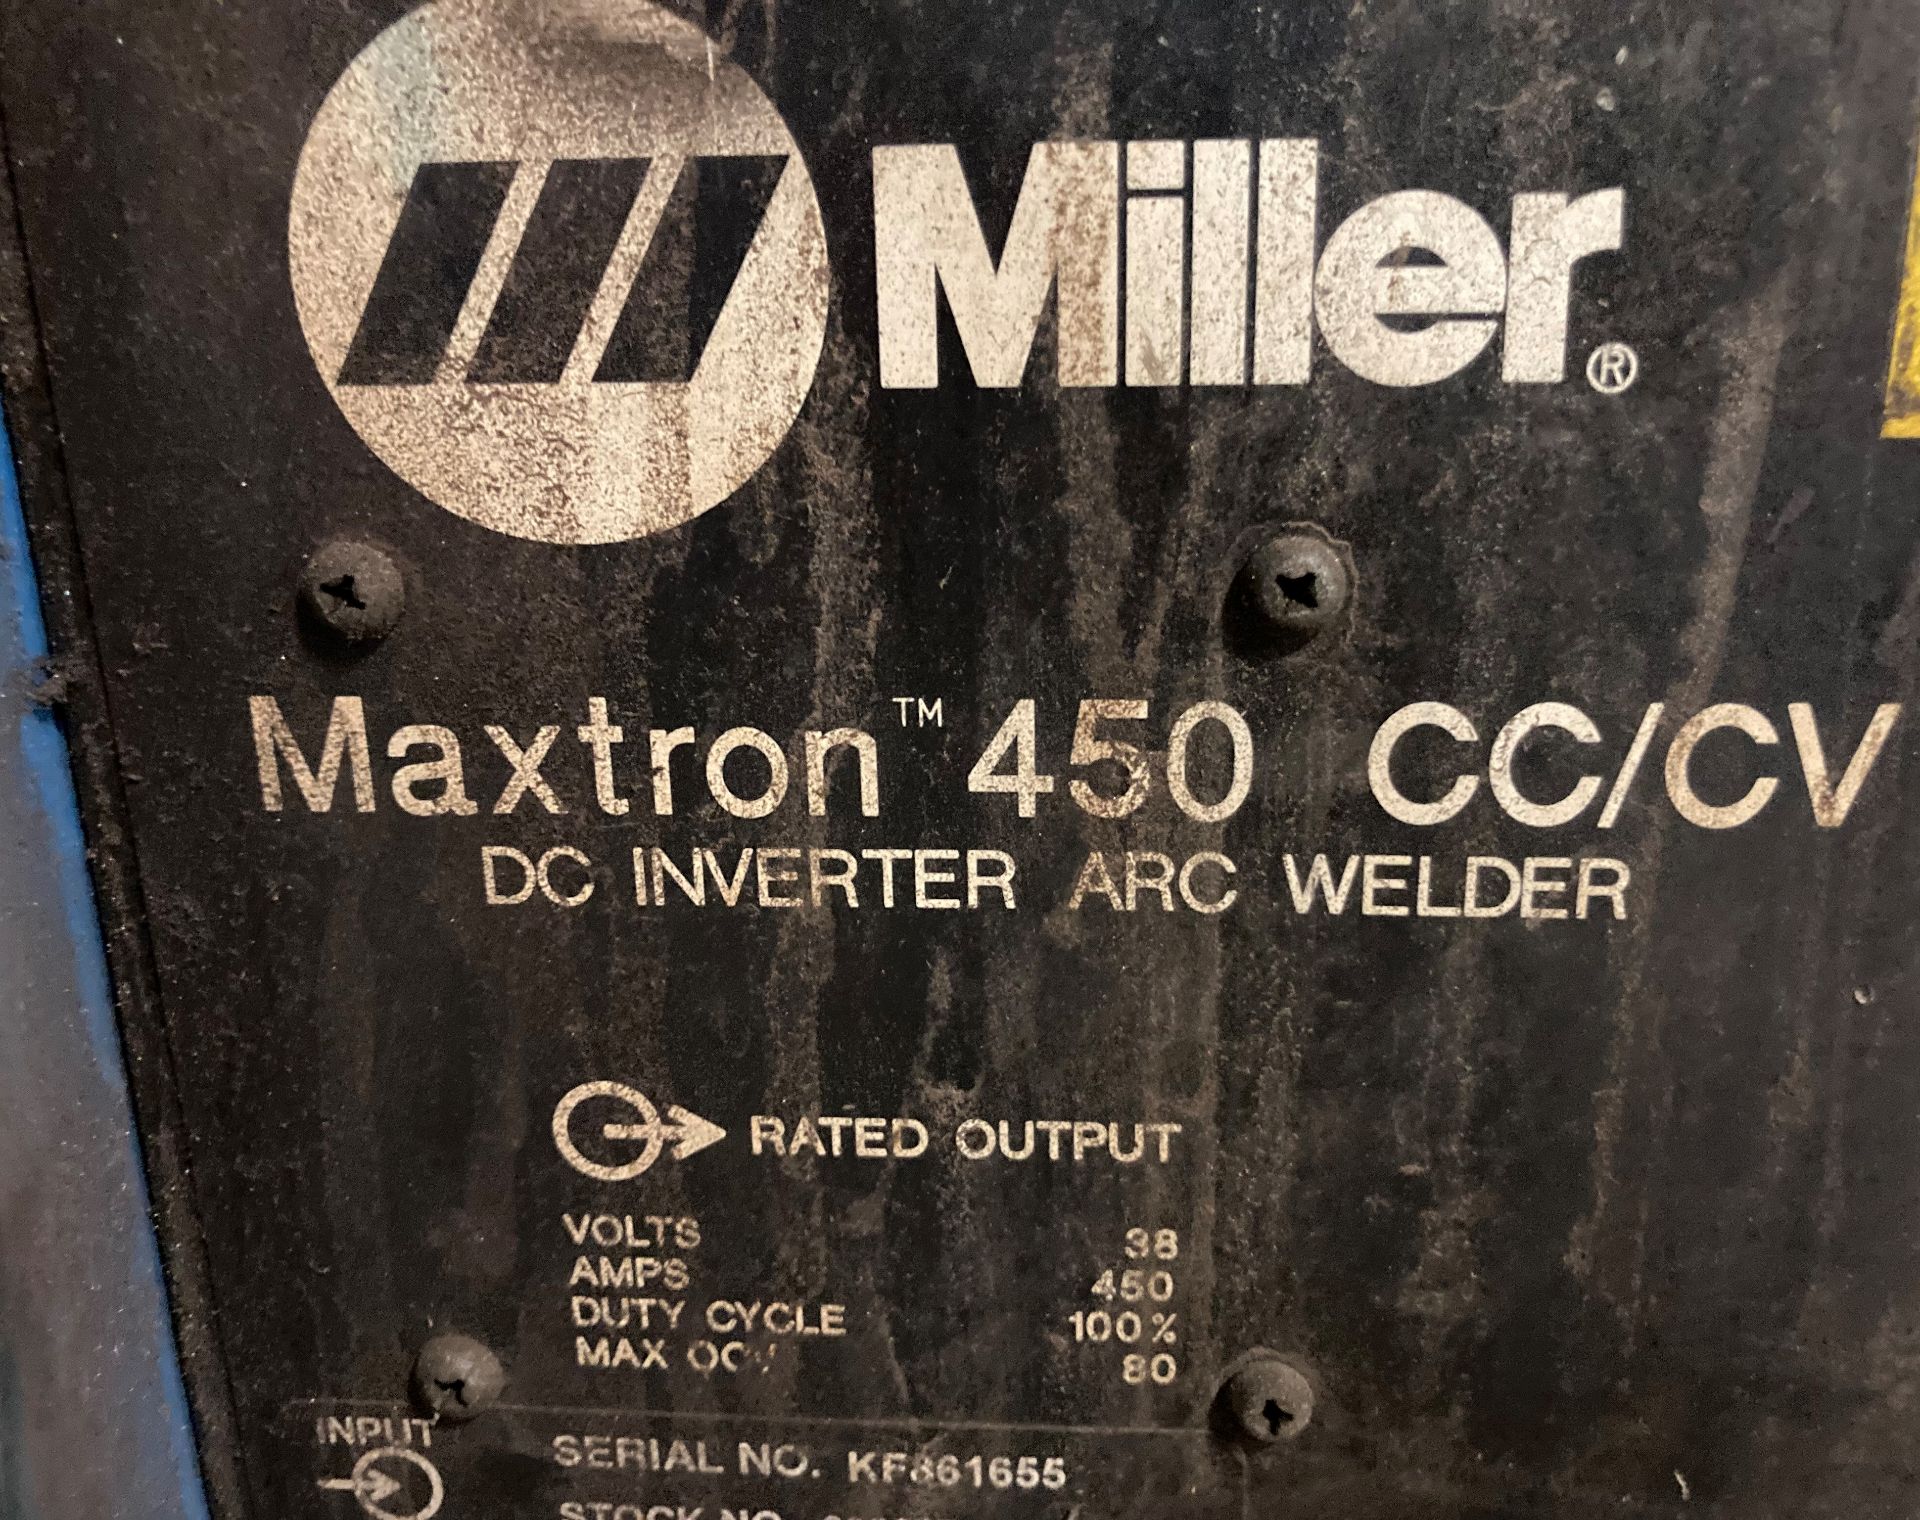 Miller Maxtron 450 CC/CV Arc Welder - Image 5 of 6